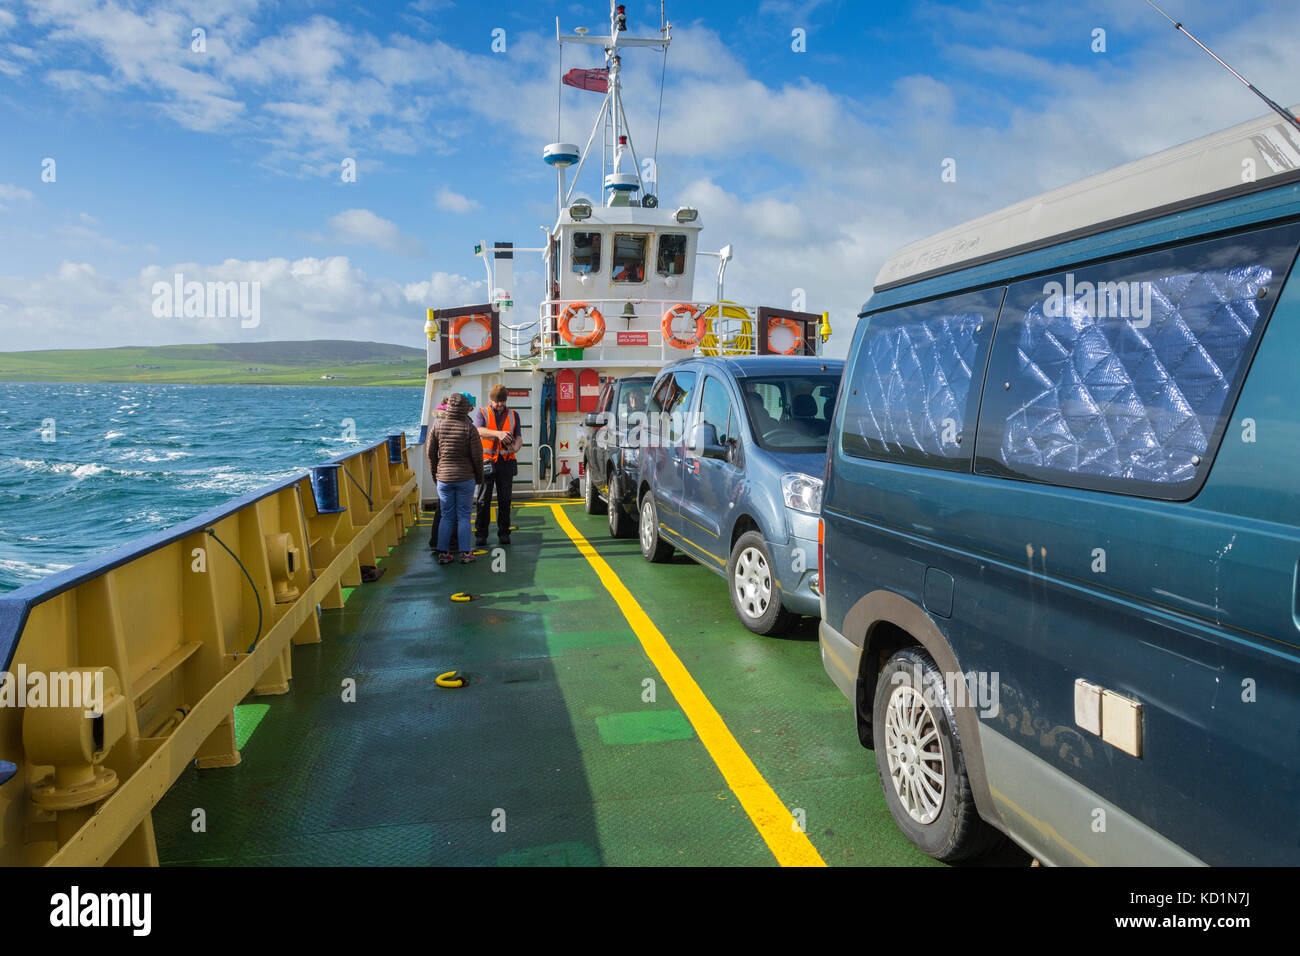 À bord du véhicule, le traversier MV Eynhallow Eynhallow Sound traversée en direction de l'île de Rousay, îles Orcades, Ecosse, Royaume-Uni. Banque D'Images